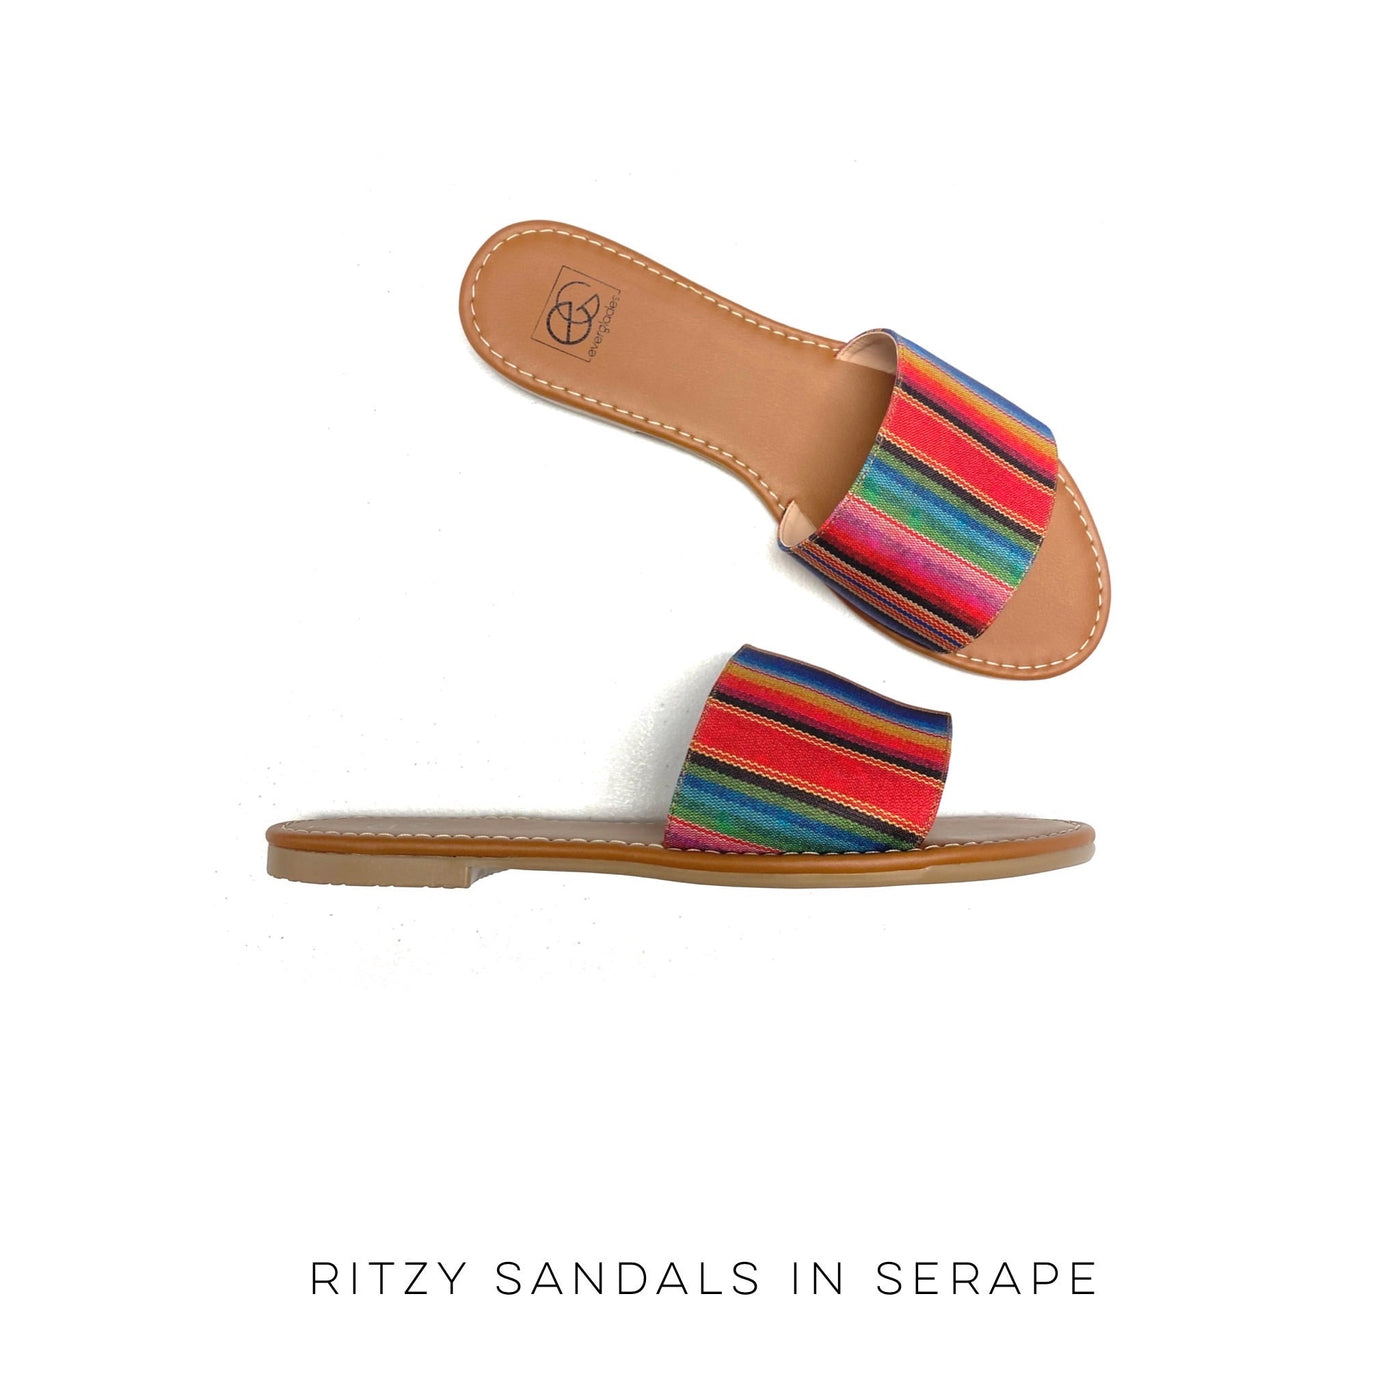 Ritzy Sandals in Serape - Copper + Rose